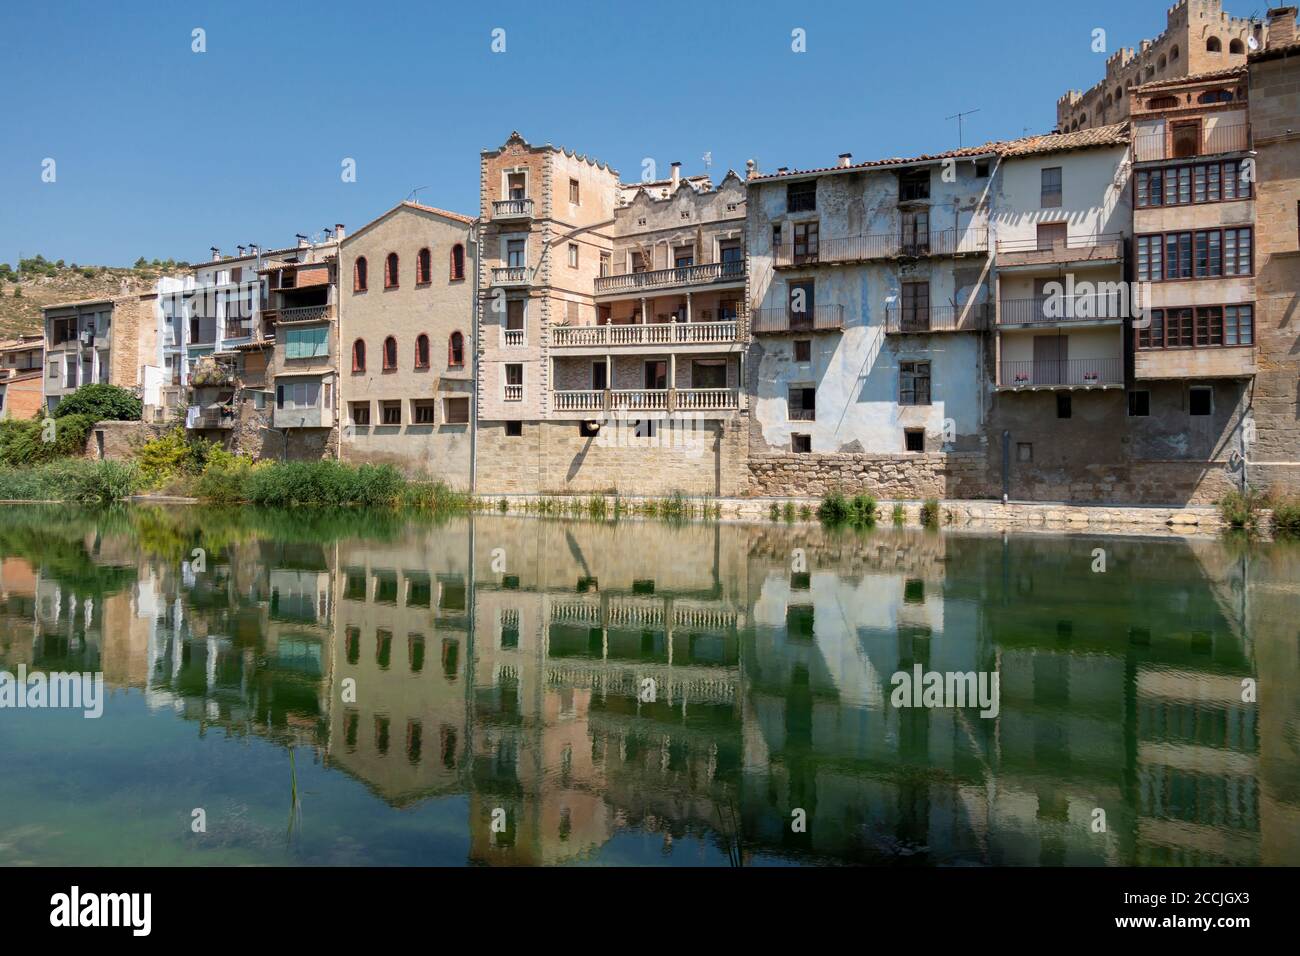 Città medievale di Valderrobres, in provincia di Teruel, Aragona (Spagna). Il fiume Matarranya e il famoso ponte medievale Foto Stock